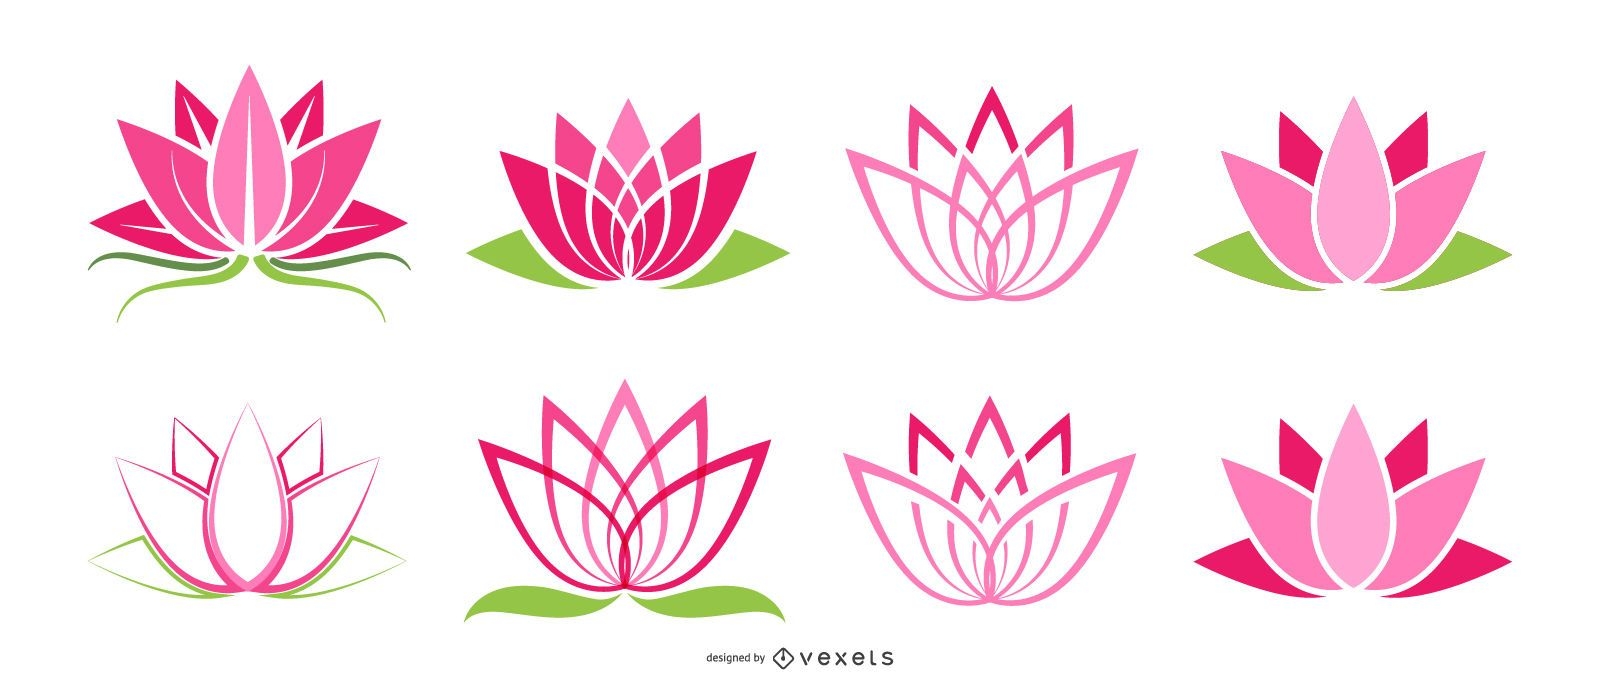 Lotus icons set